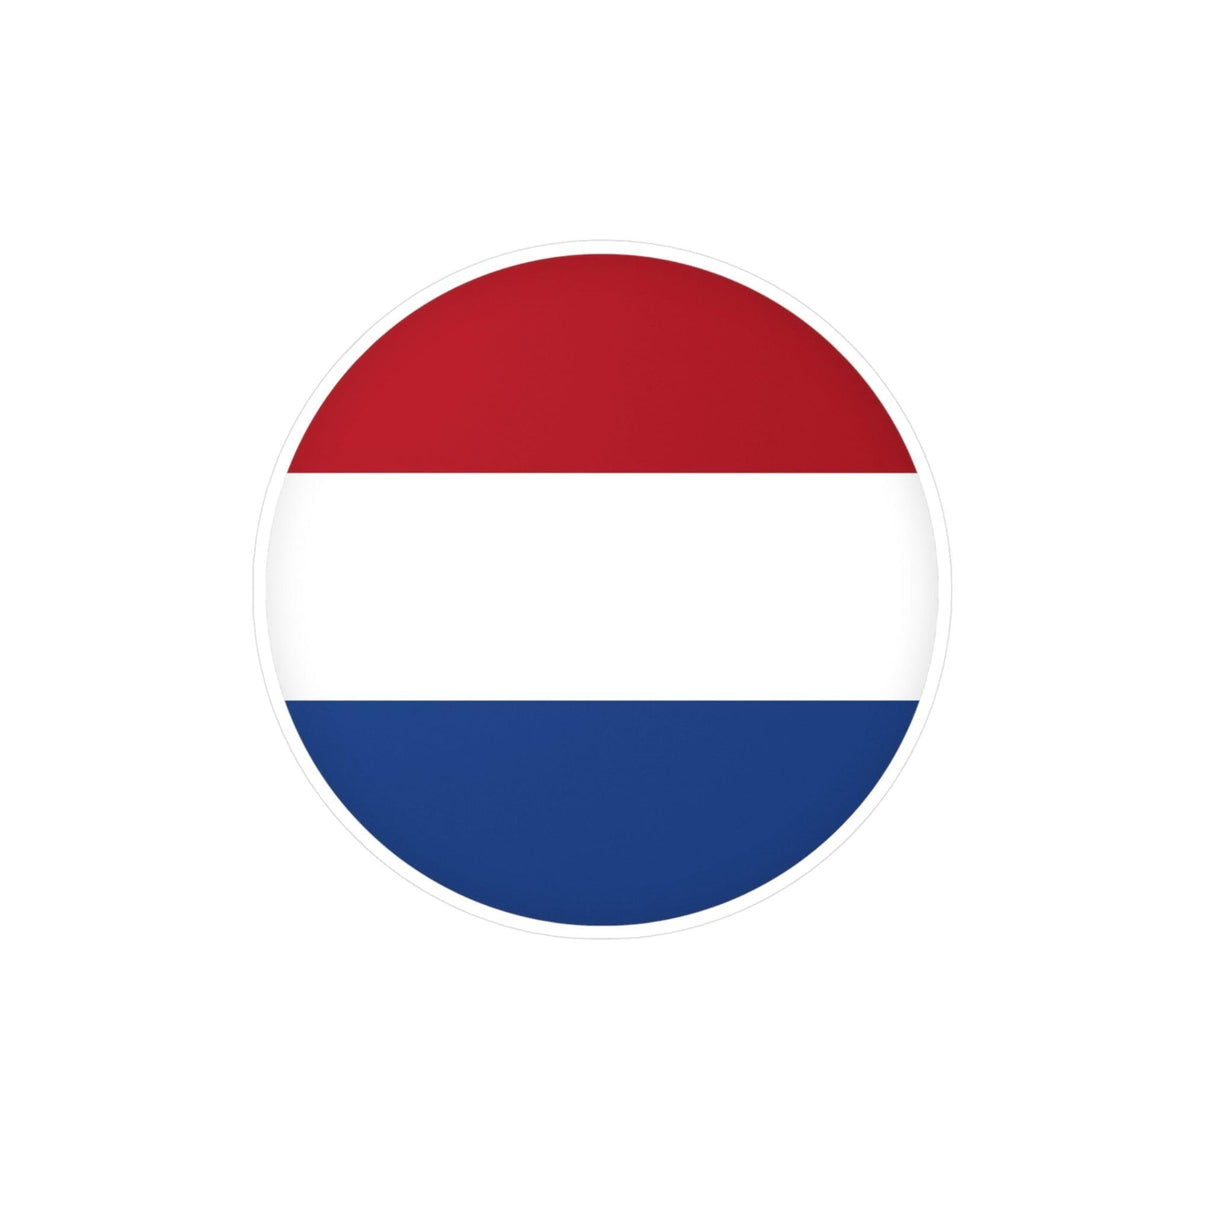 Autocollant rond Drapeau des Pays-Bas en plusieurs tailles - Pixelforma 